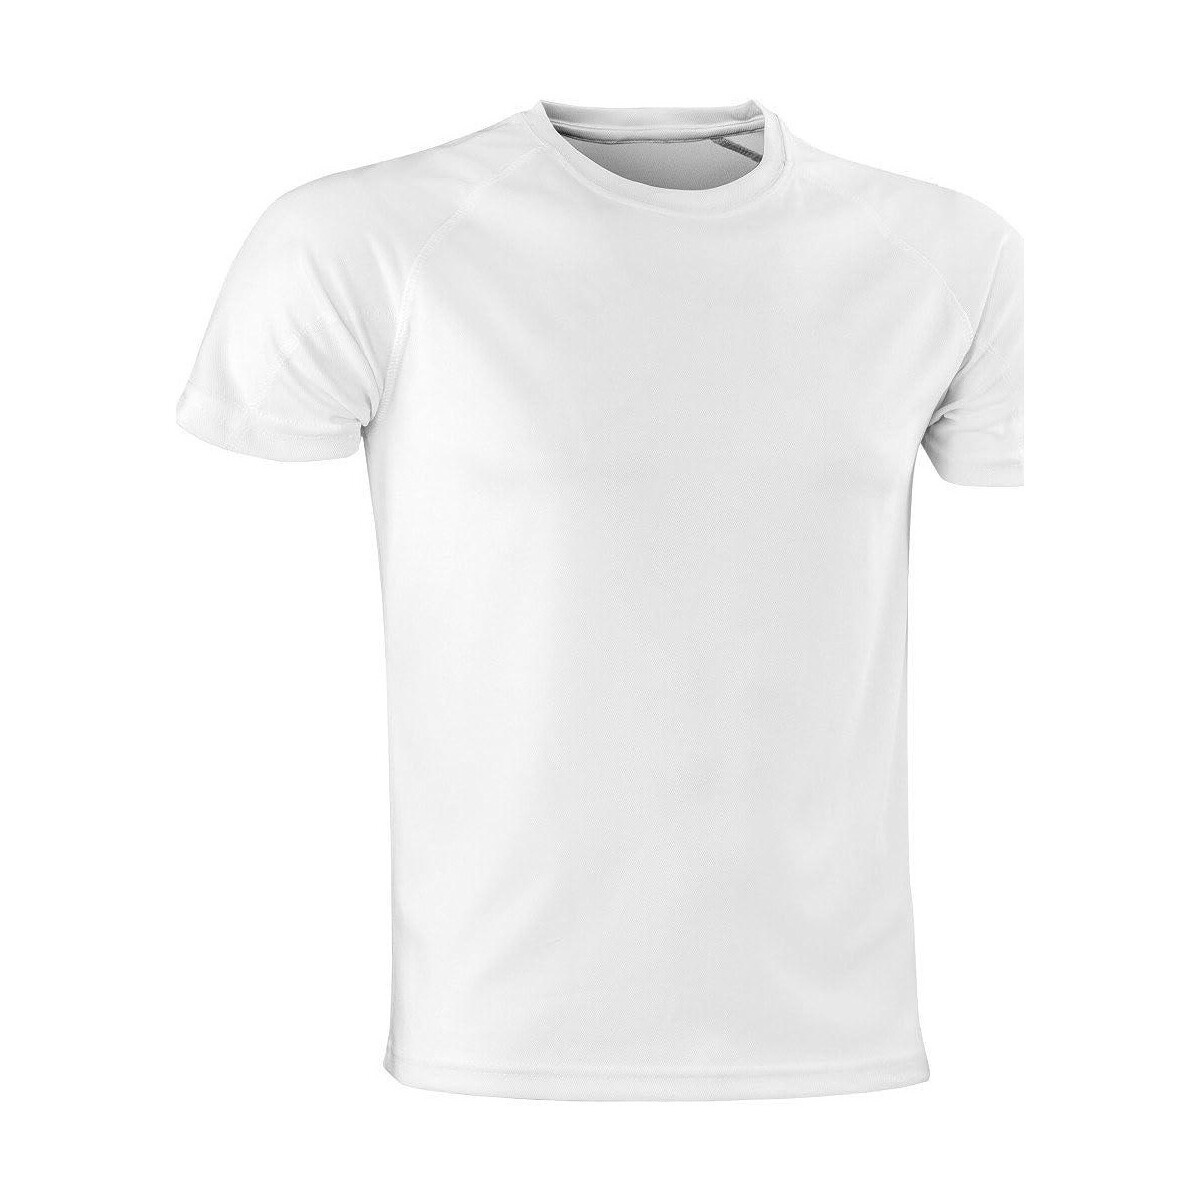 textil Hombre Tops y Camisetas Spiro Impact Aircool Blanco